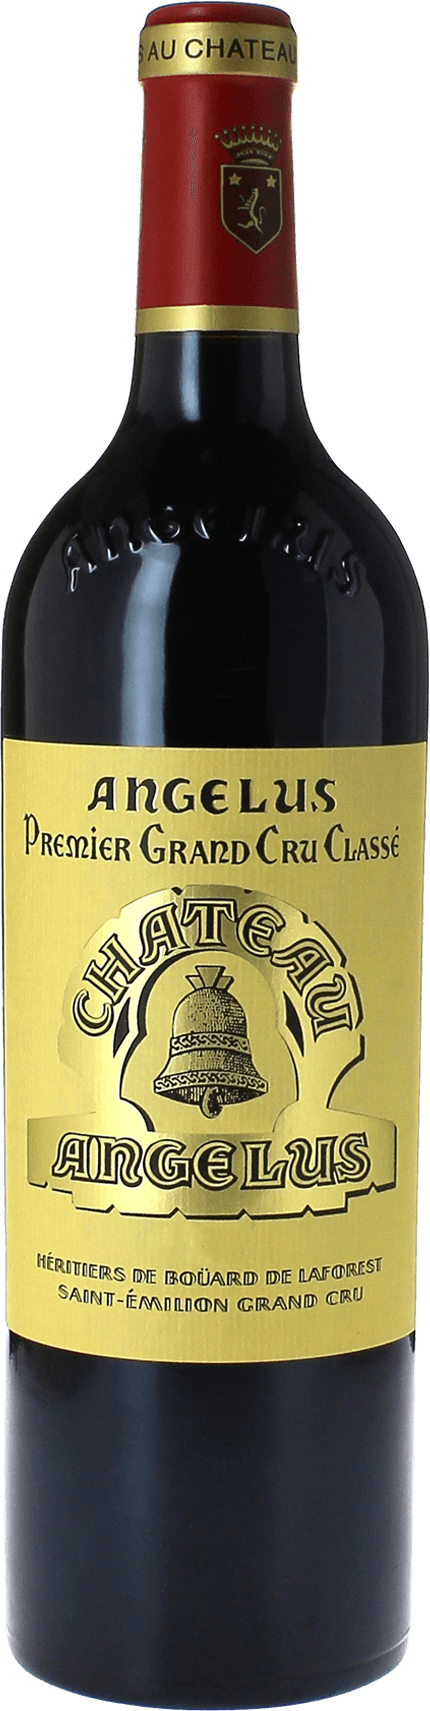 Angelus 1993 1er Grand cru class A Saint-Emilion, Bordeaux rouge